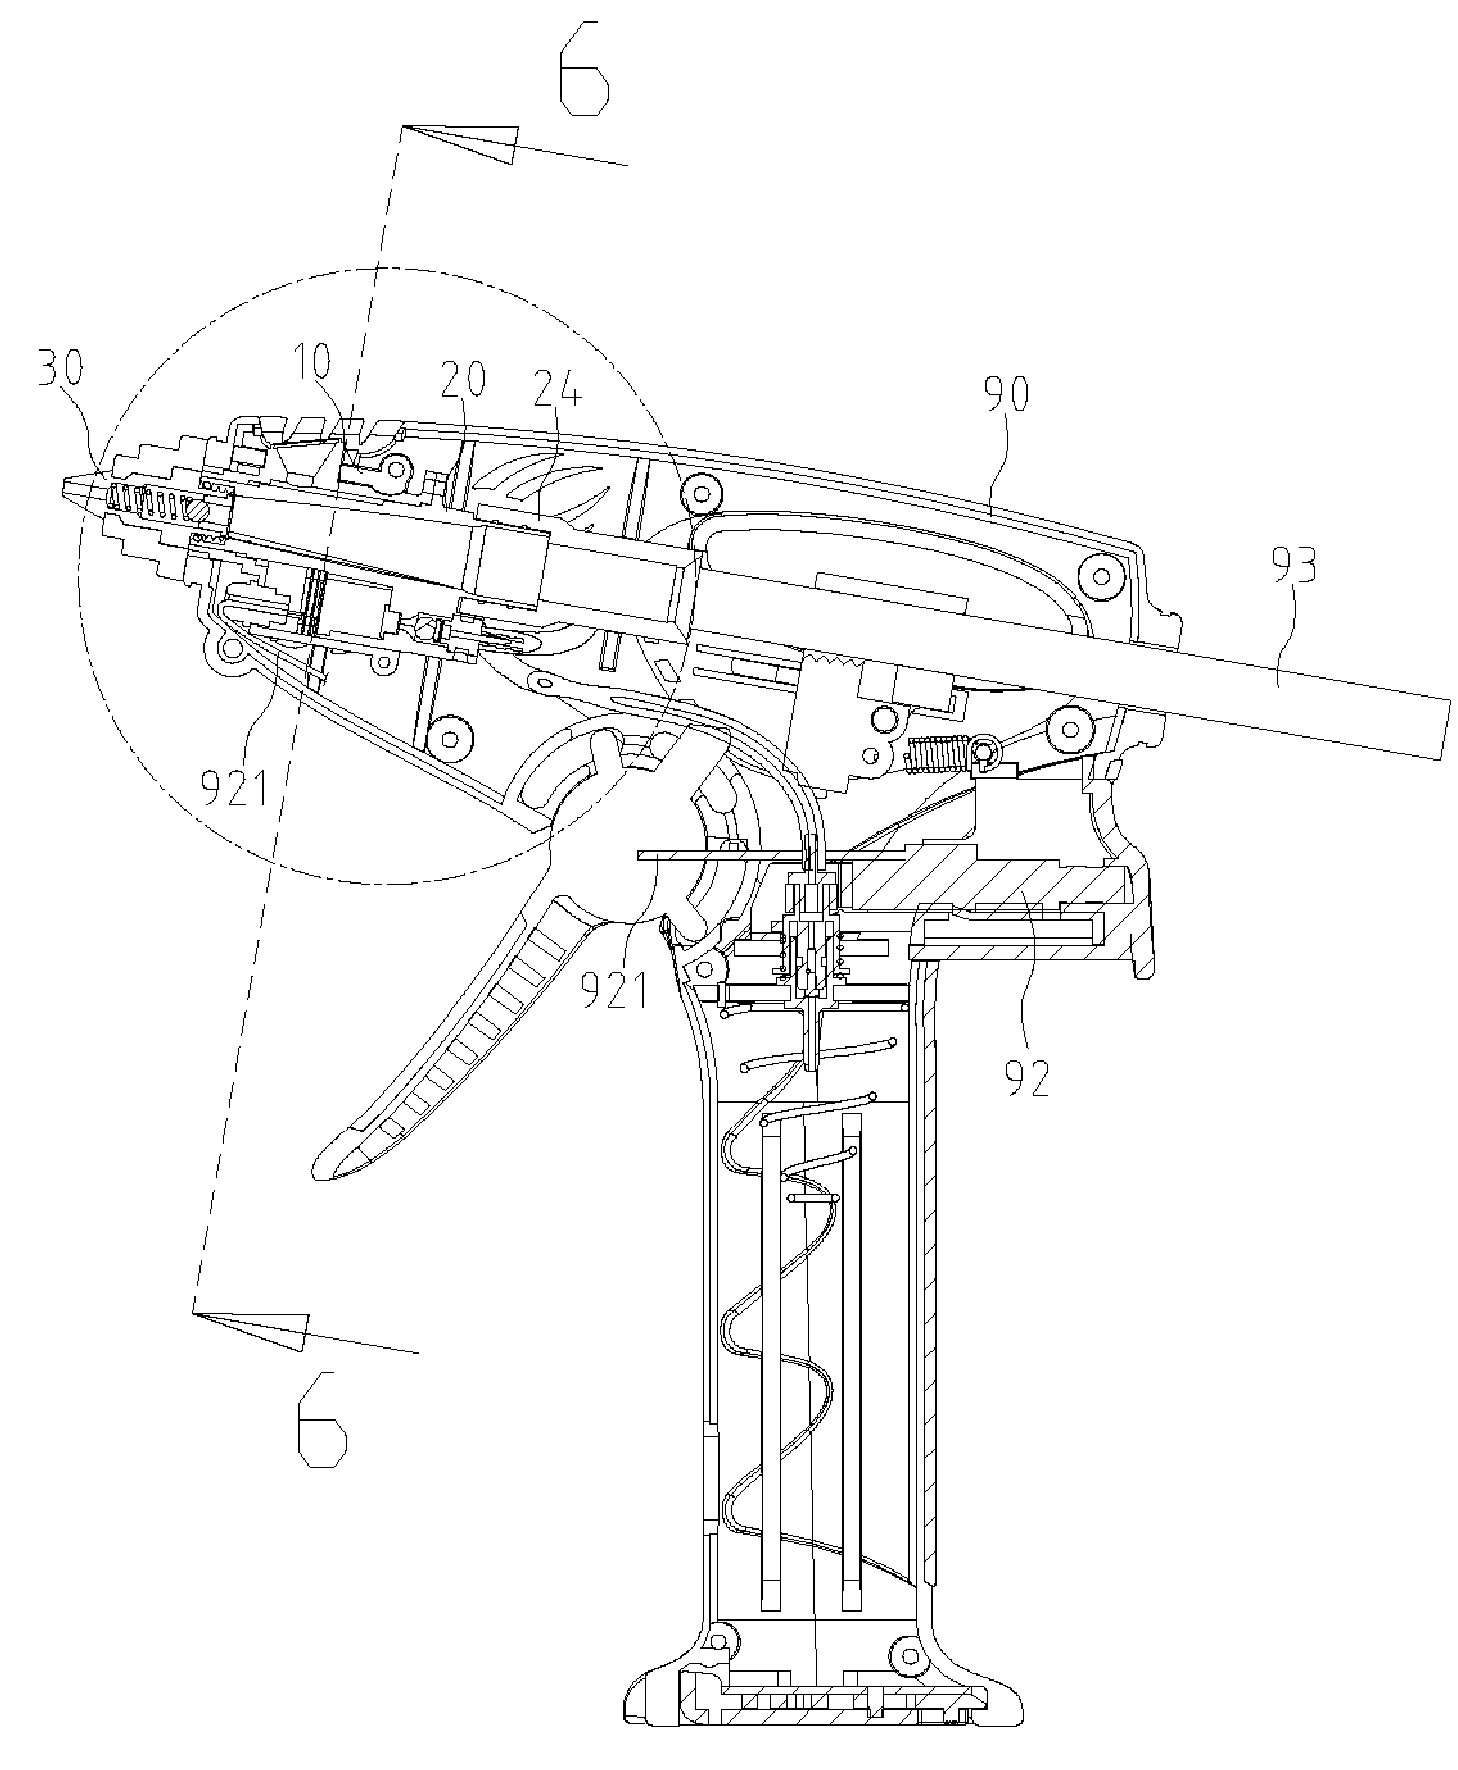 Gas-powered glue gun